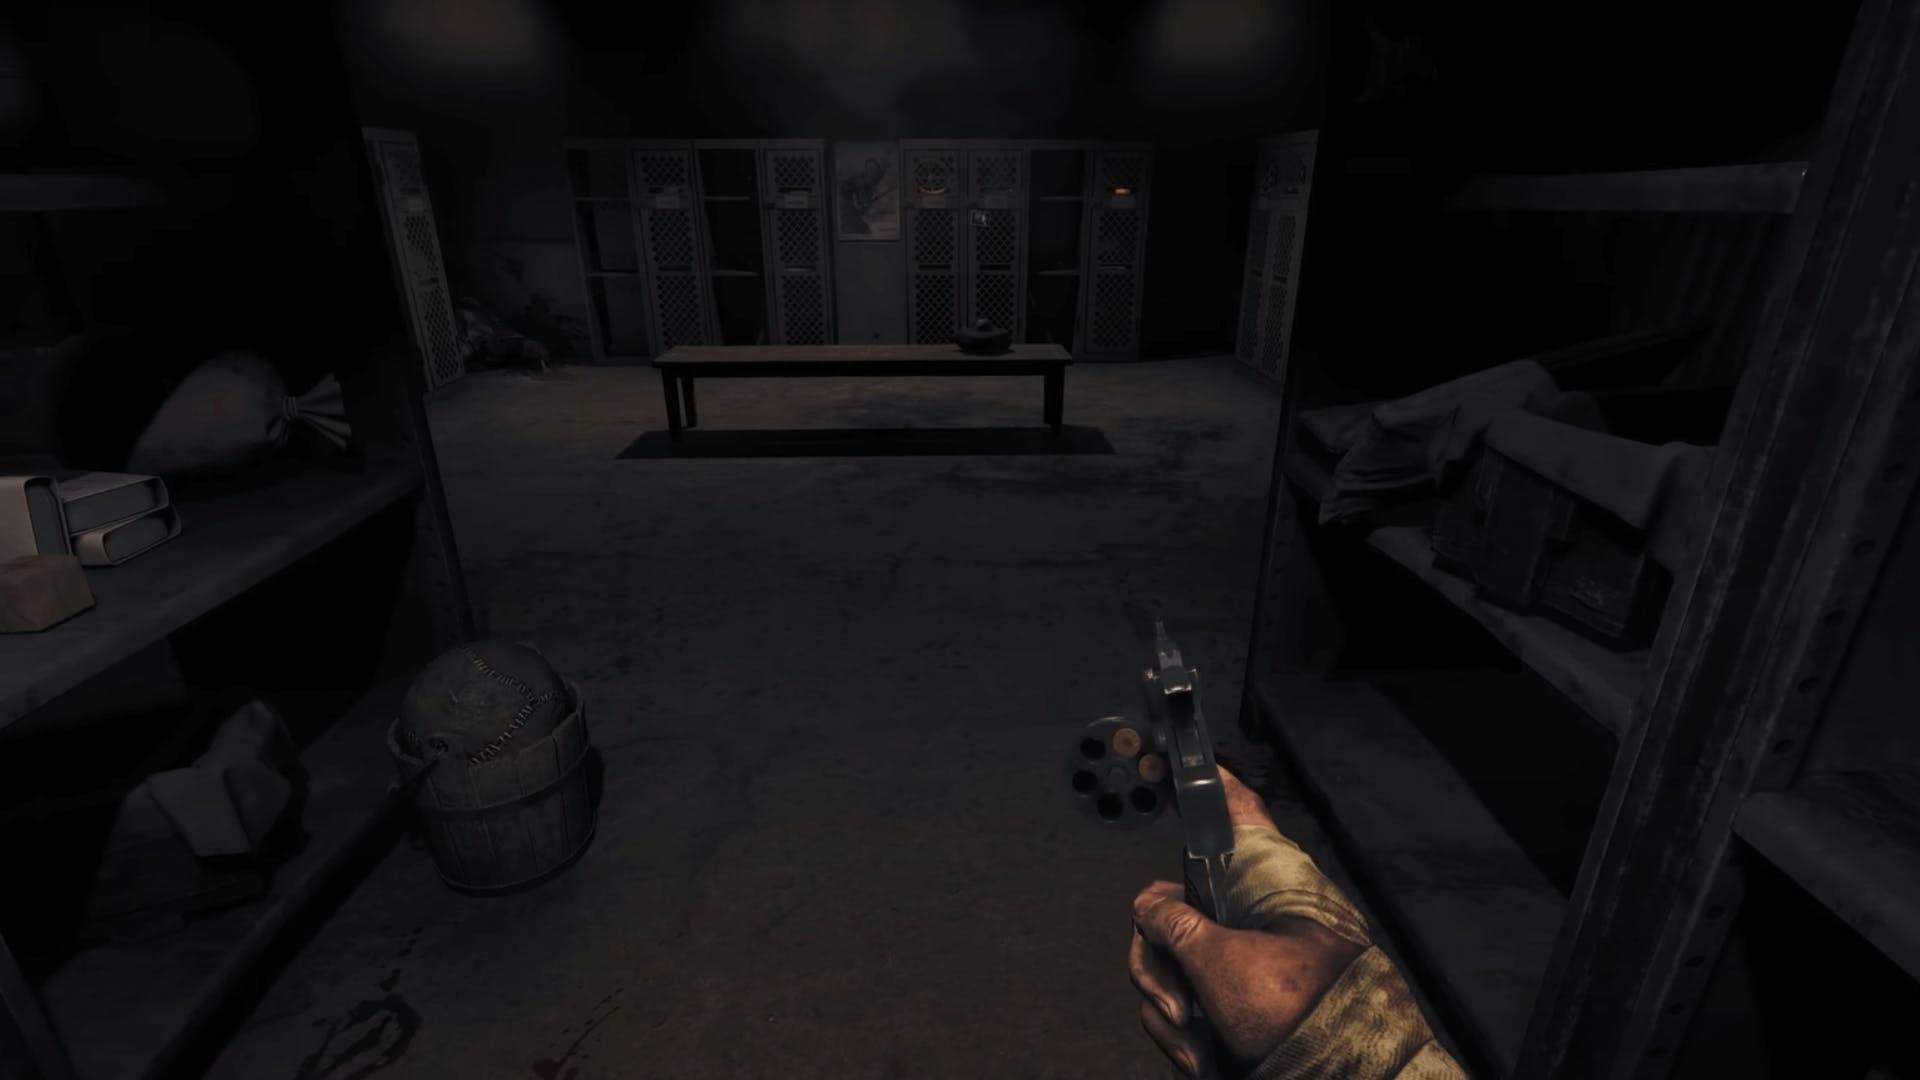 Gezeigt wird das Horror-Spiel: Amnesia: The Bunker. Der Spieler befindet sich einem dunklien Raum und hat eine Waffe in der Hand.